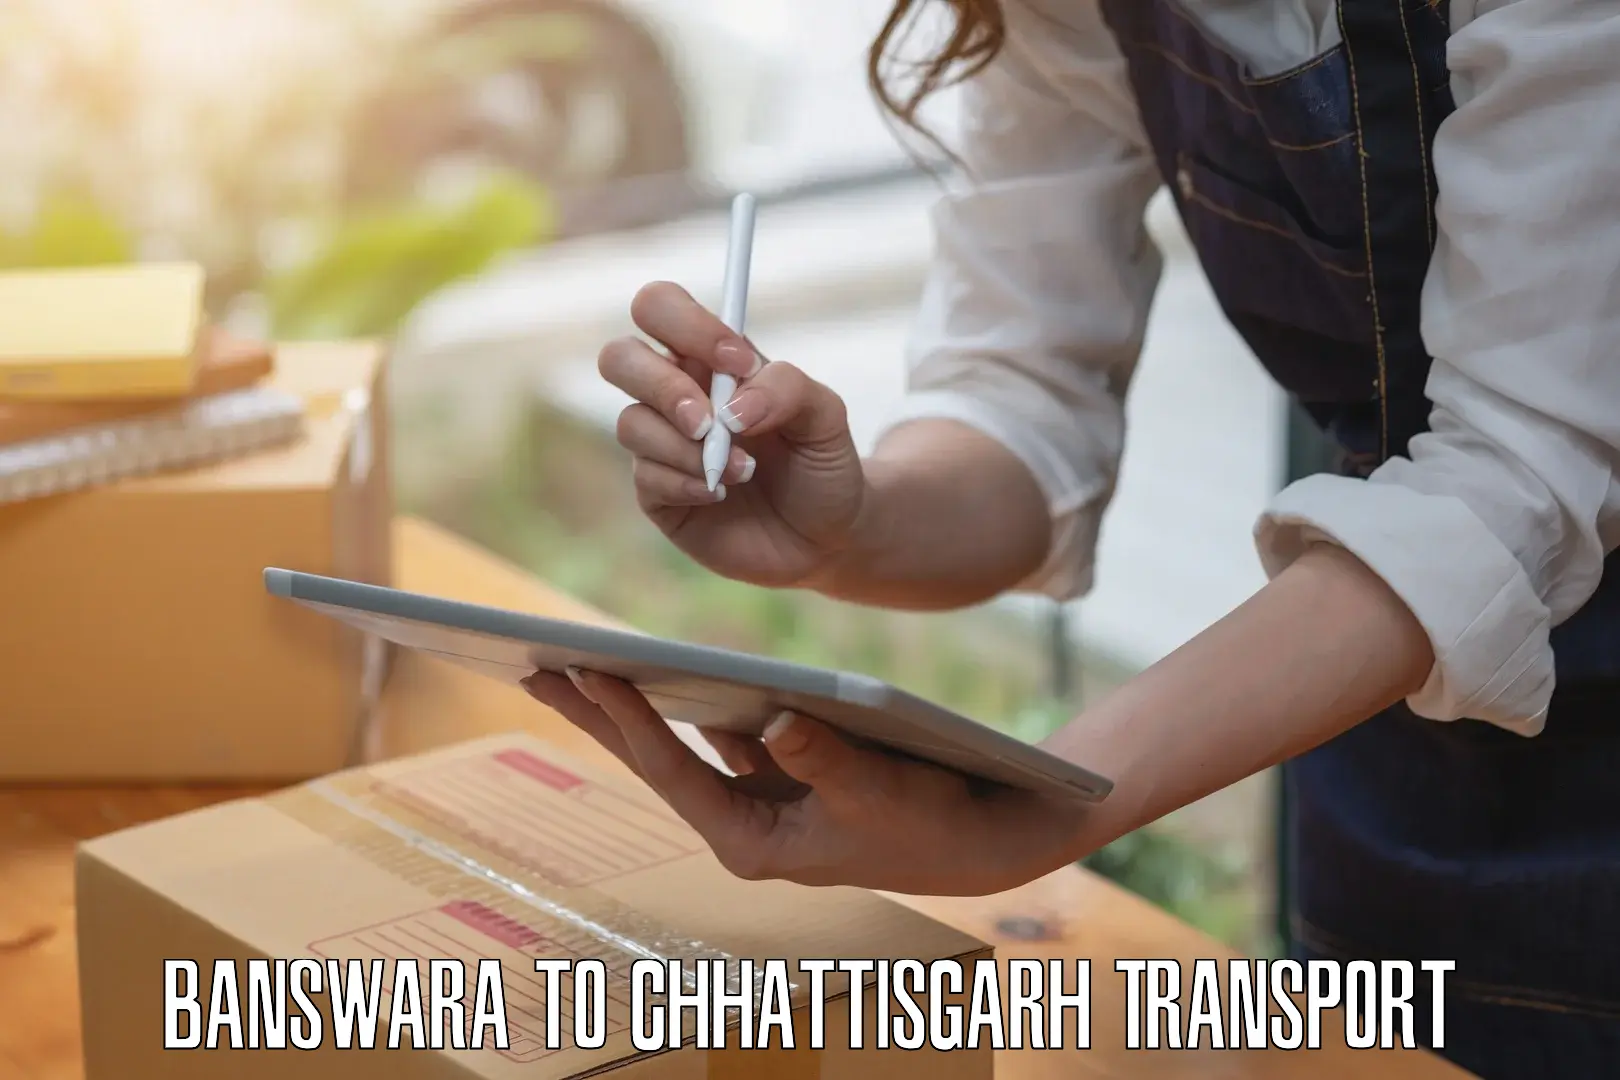 Transportation services in Banswara to Chirimiri